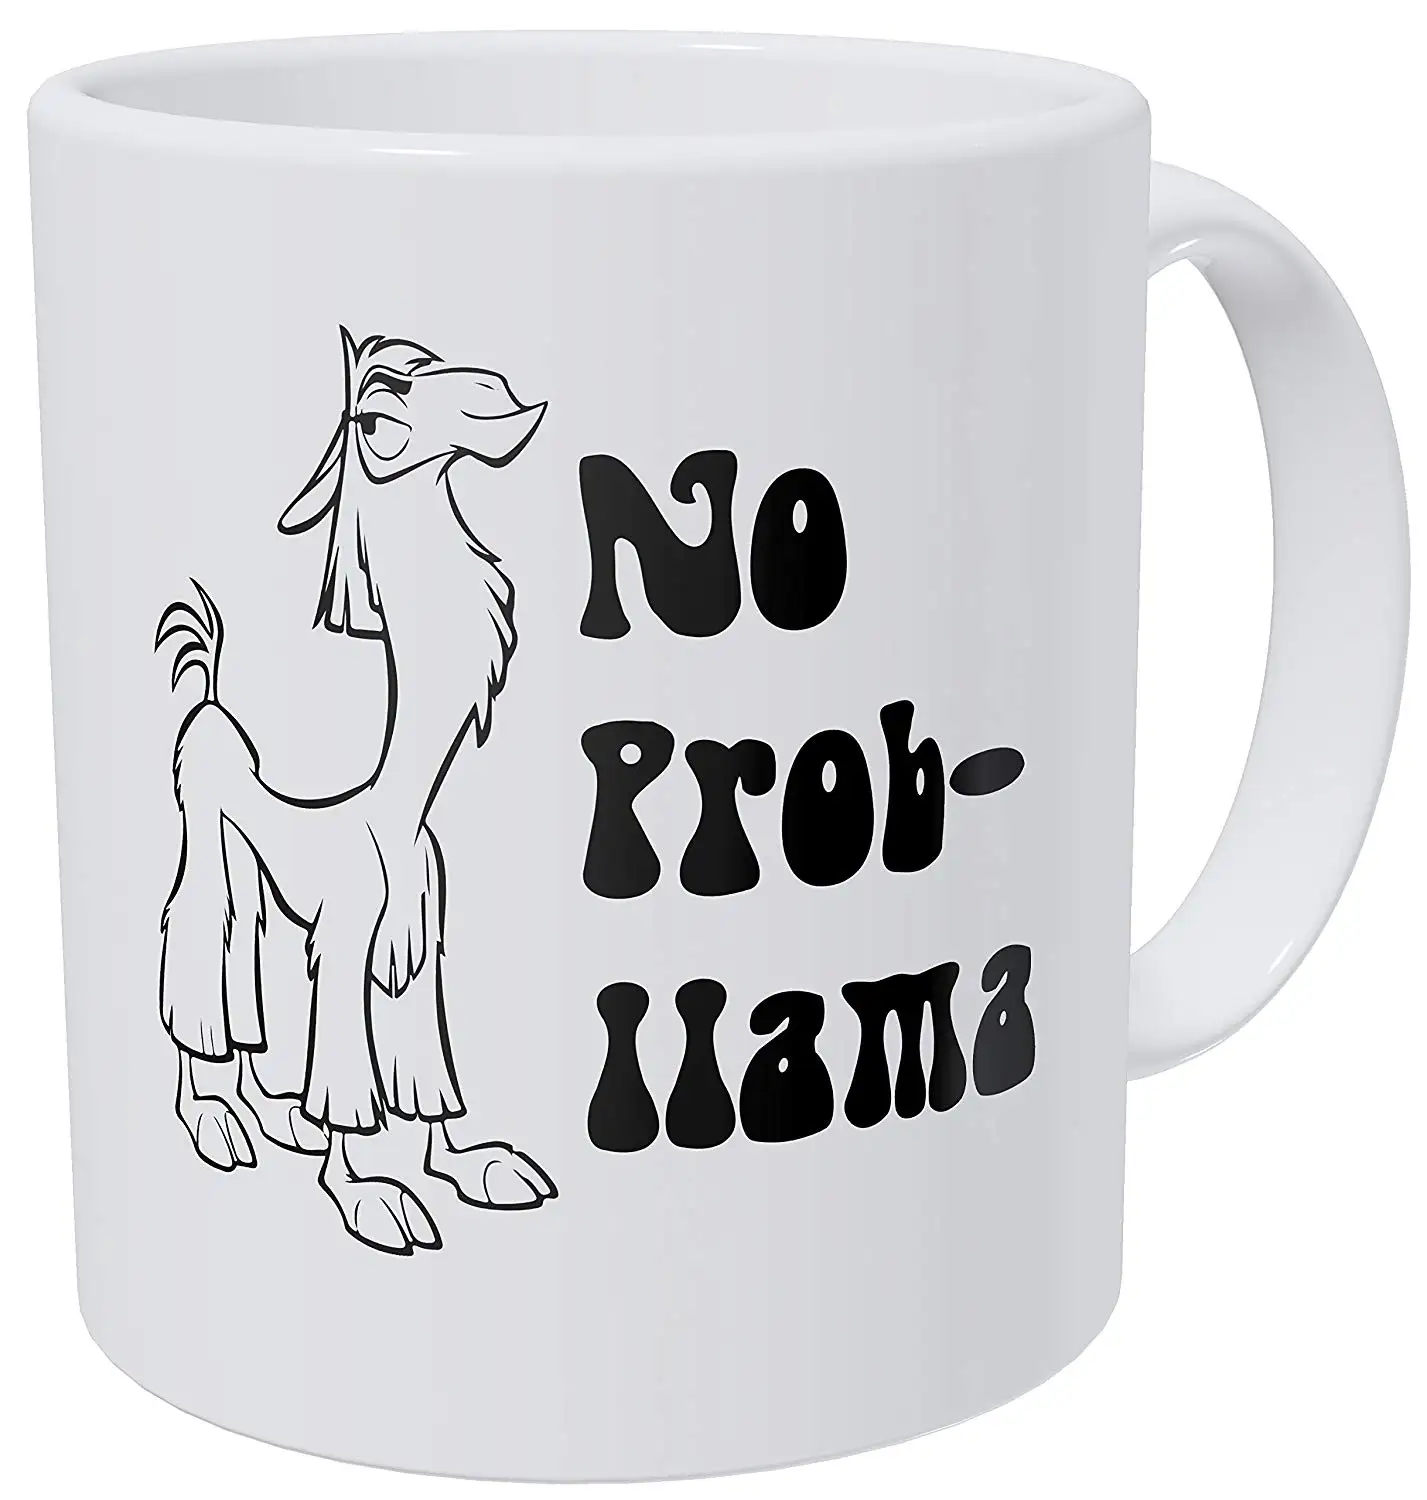 Details about   Teddy the Dog Coffee Mug No Probllama Ltd Ed Cartoon Canine Llama Cup Problem